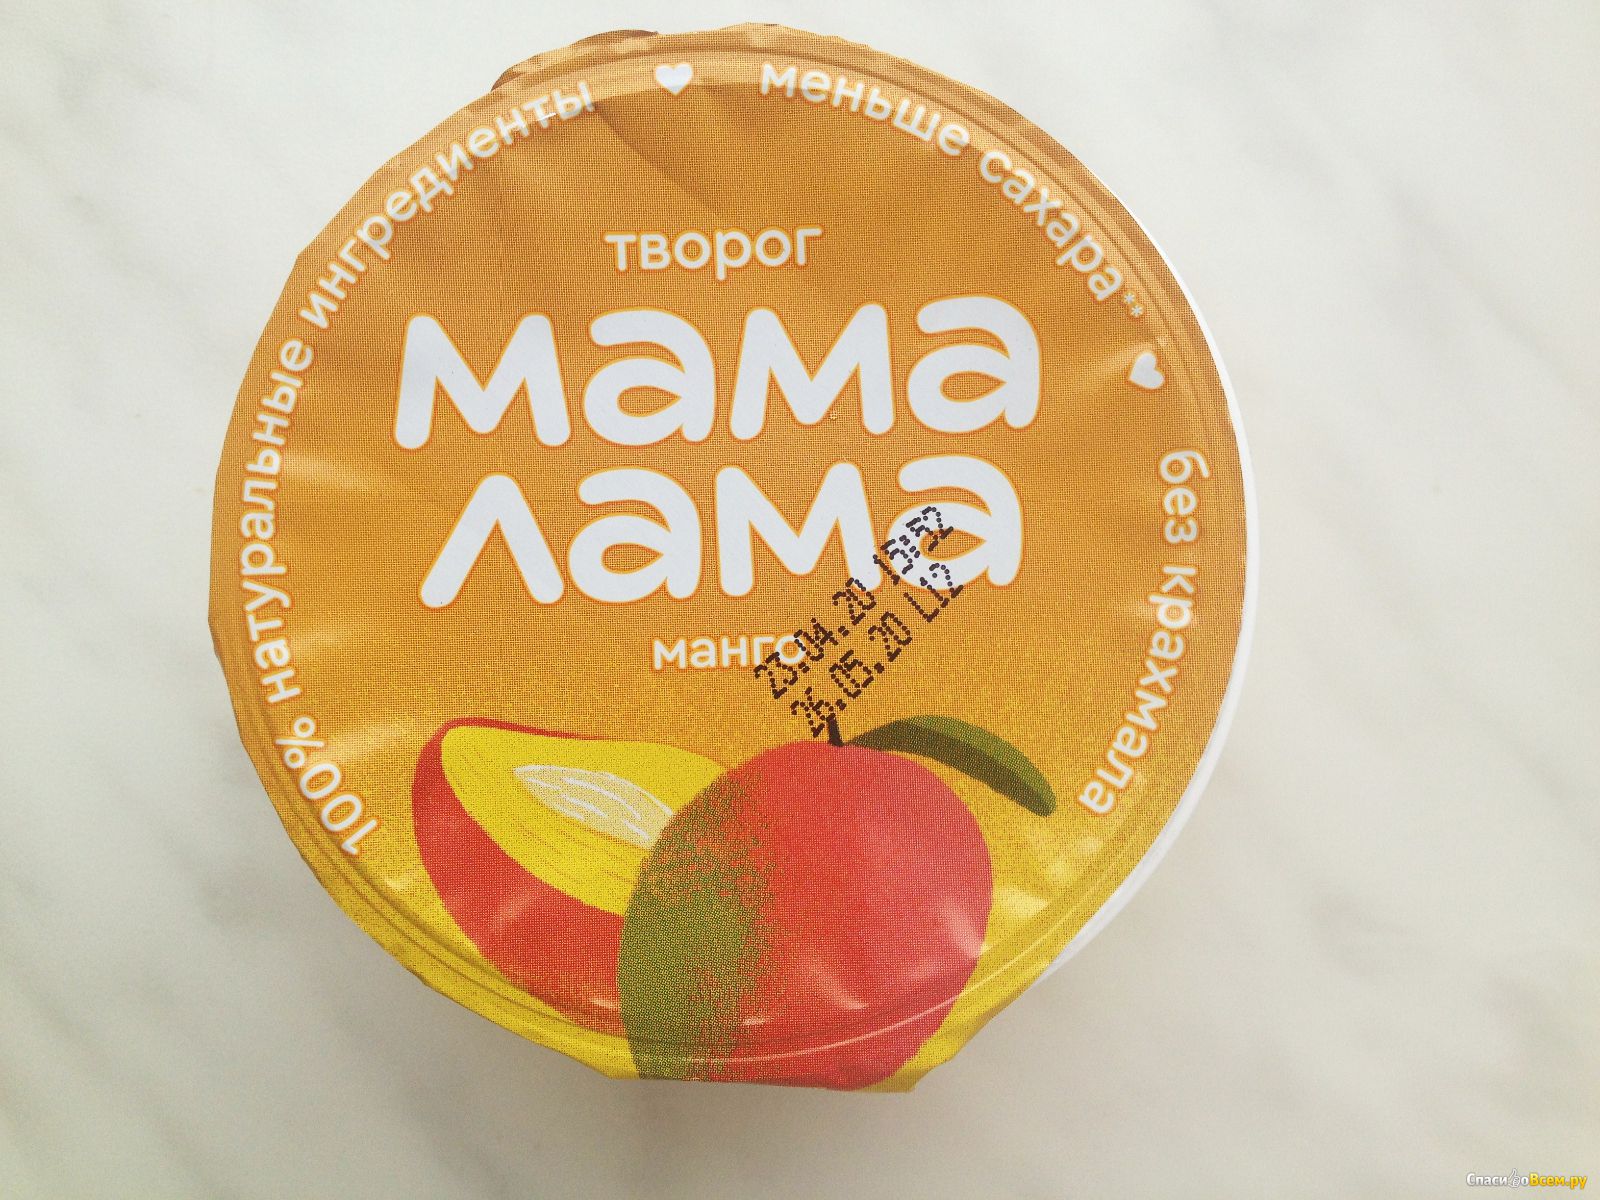 Картинка лама мама. Мама лама творог манго 3.8 100г. Epica йогурт мама лама. Мама лама йогурт манго. Творог детский мама лама.